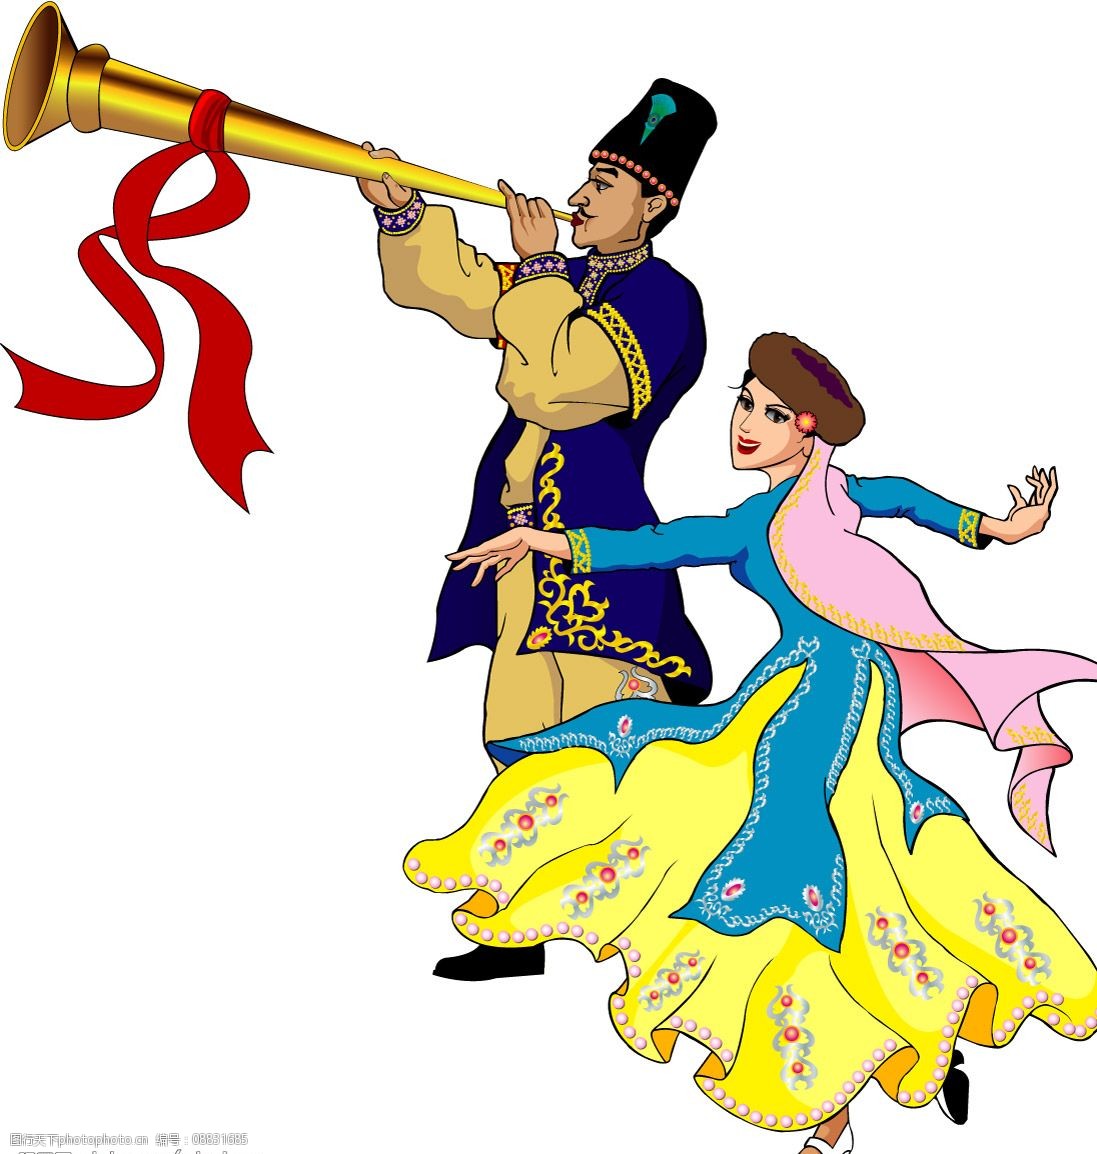 关键词:手绘维吾尔族小伙和姑娘 民族歌舞 矢量人物 其他人物 矢量